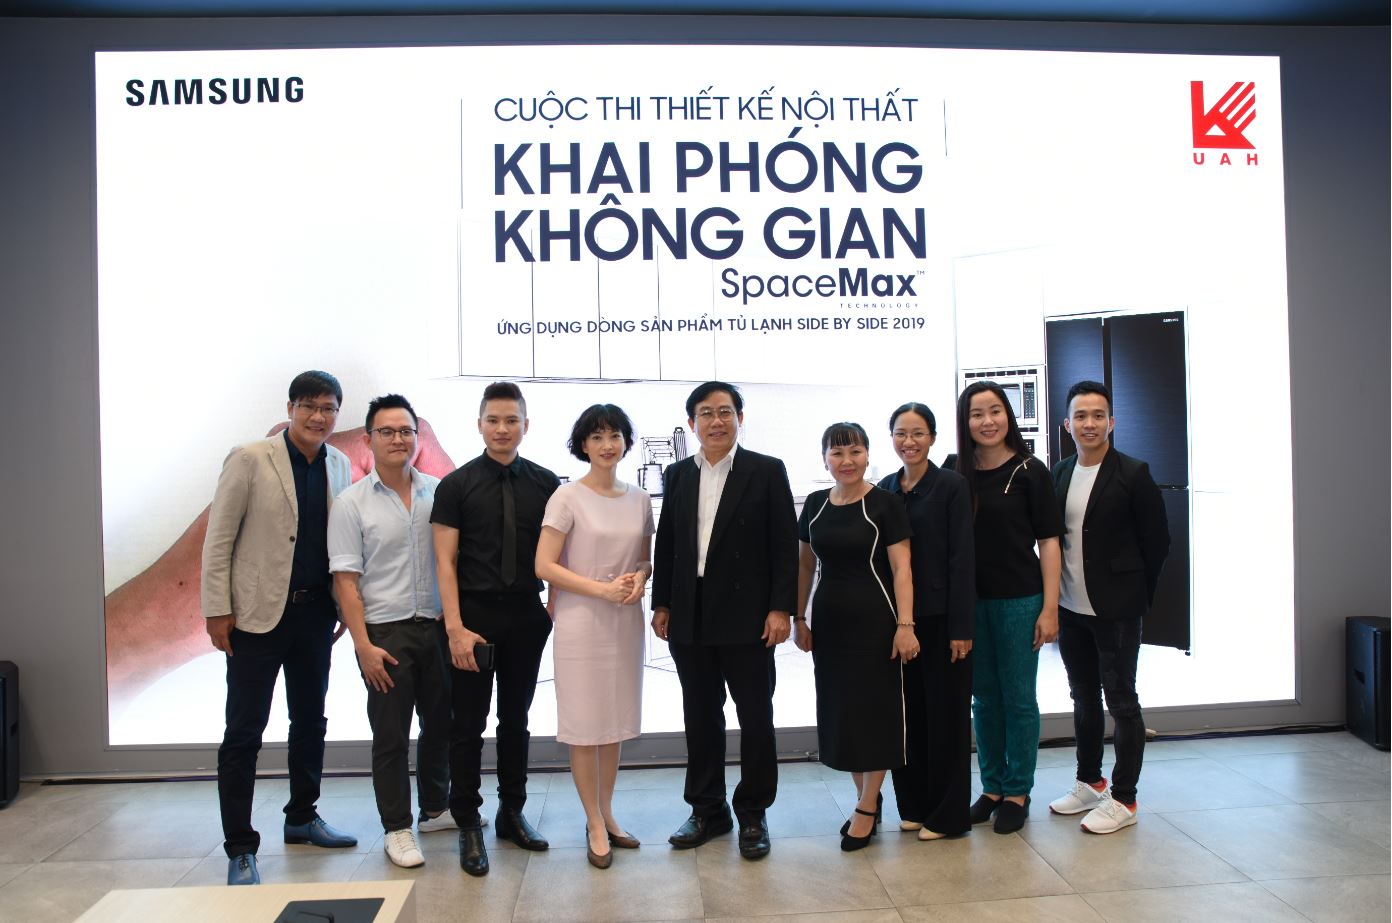 Samsung tổ chức chung kết cuộc thi thiết kế “Khai phóng không gian Spacemax” dành cho sinh viên Kiến trúc TP. HCM